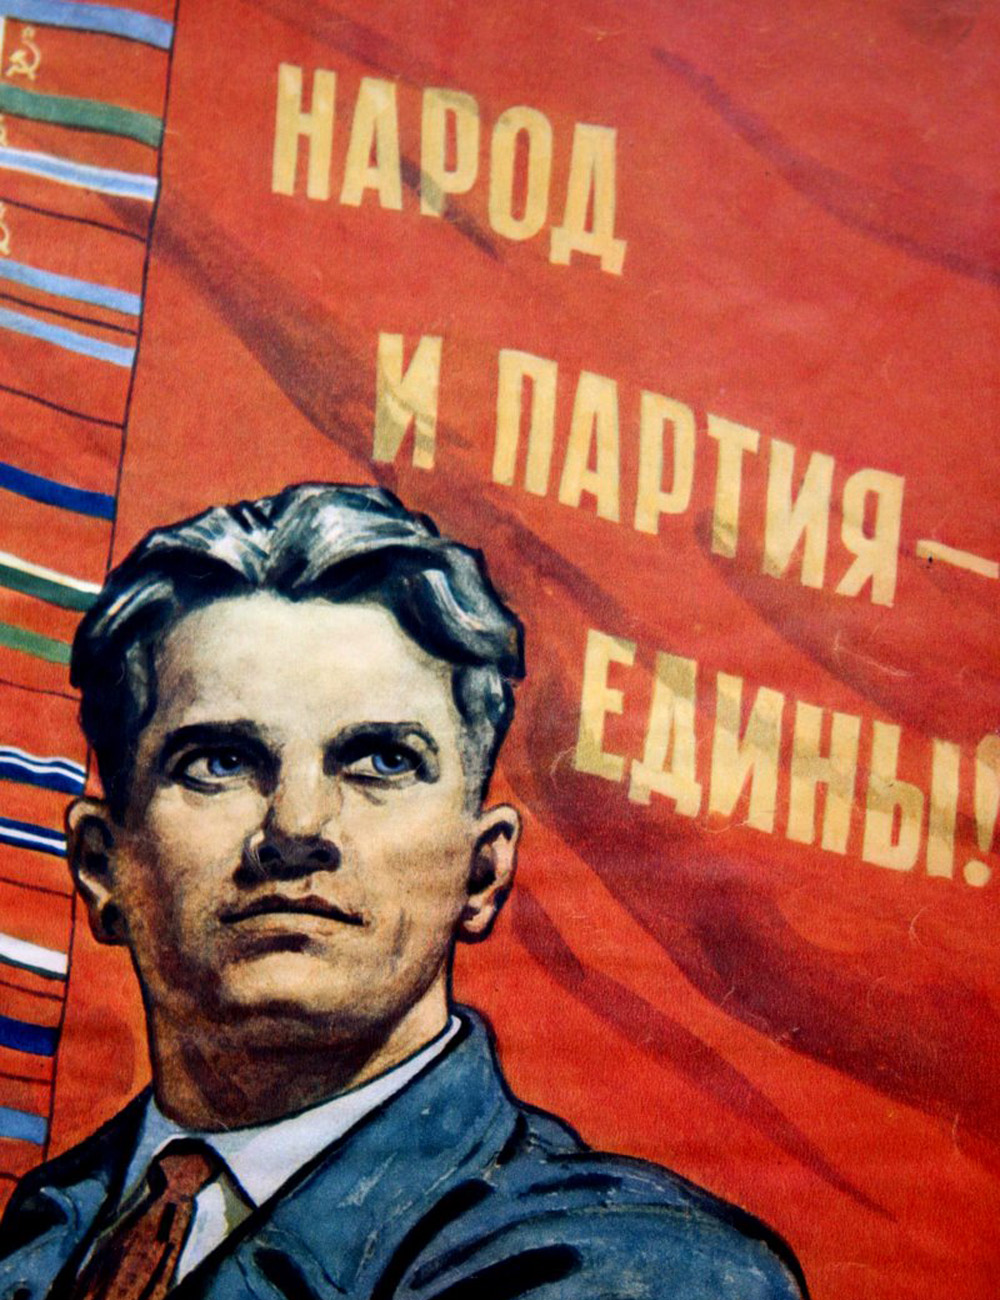 Народ и партия едины. Плакаты партий. Советские плакаты про партию. Народ и партия едины плакат.